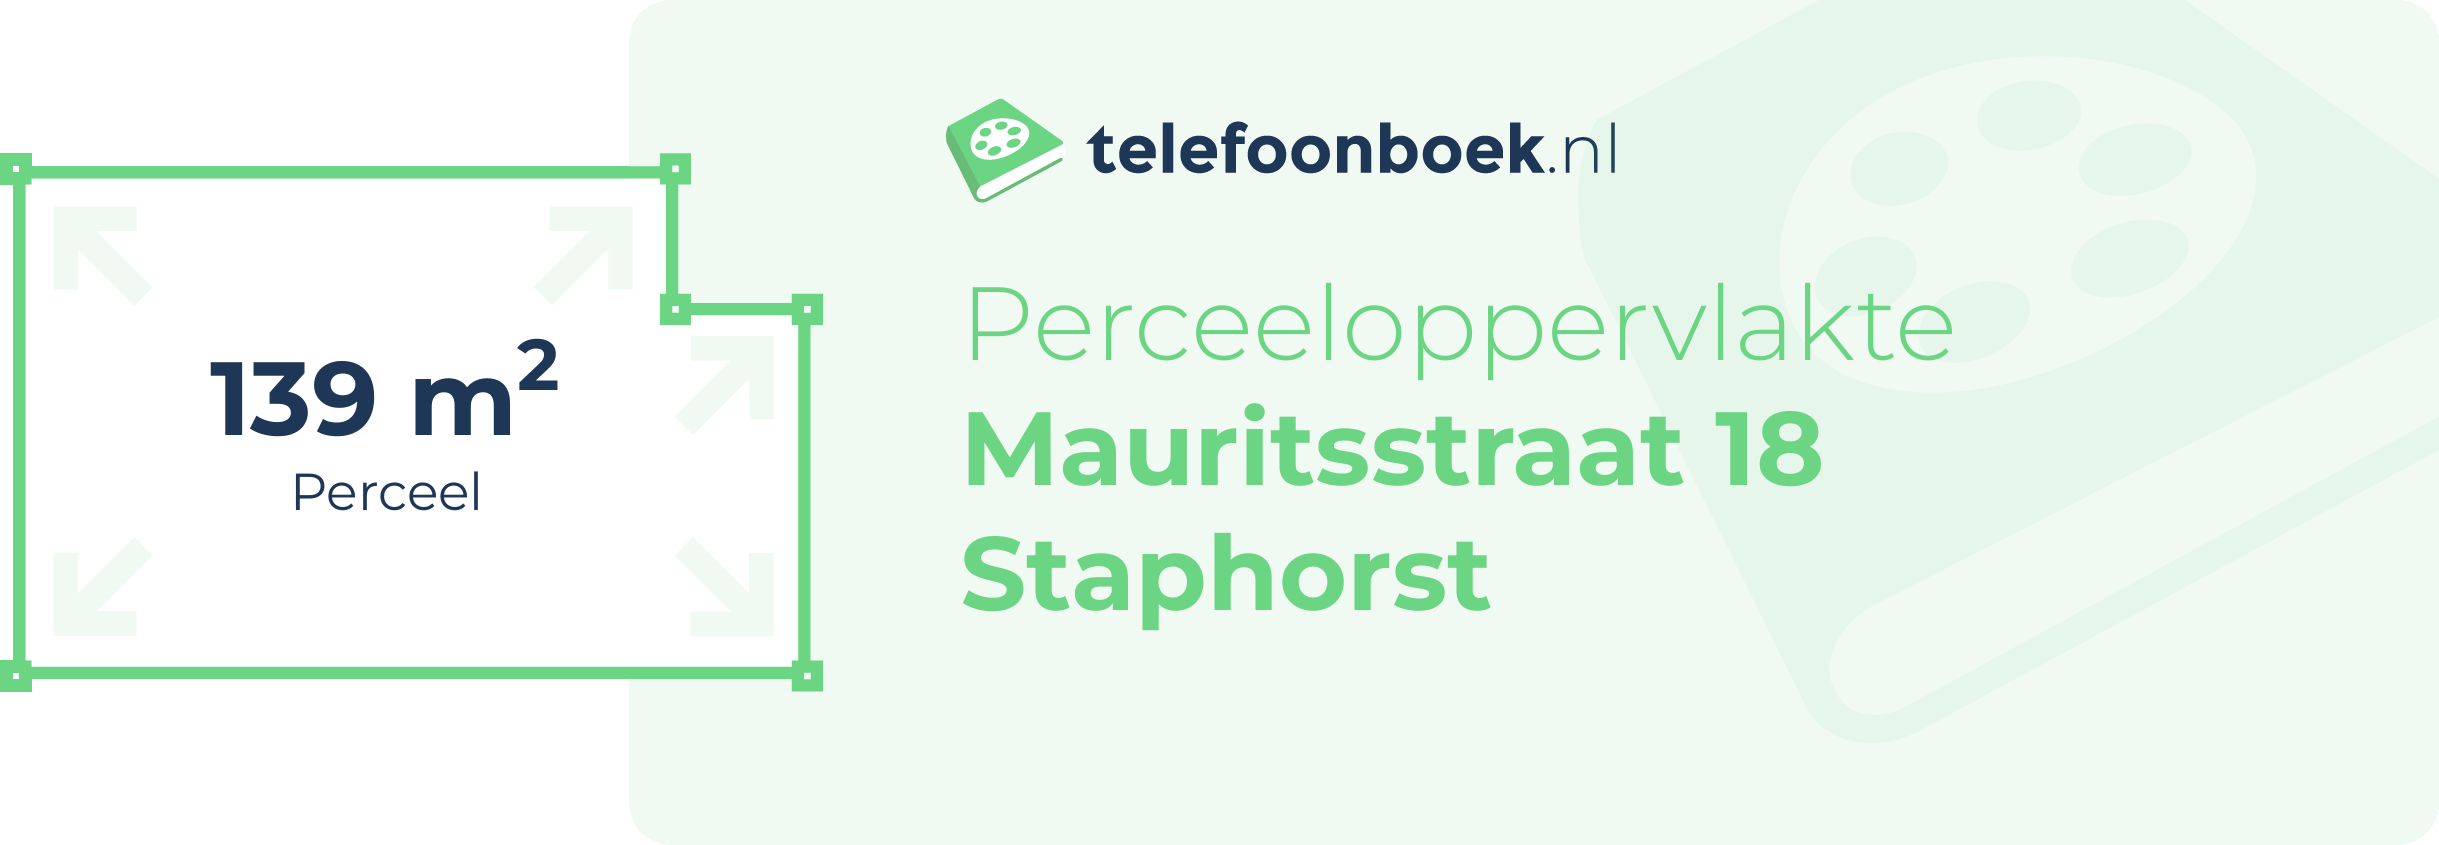 Perceeloppervlakte Mauritsstraat 18 Staphorst